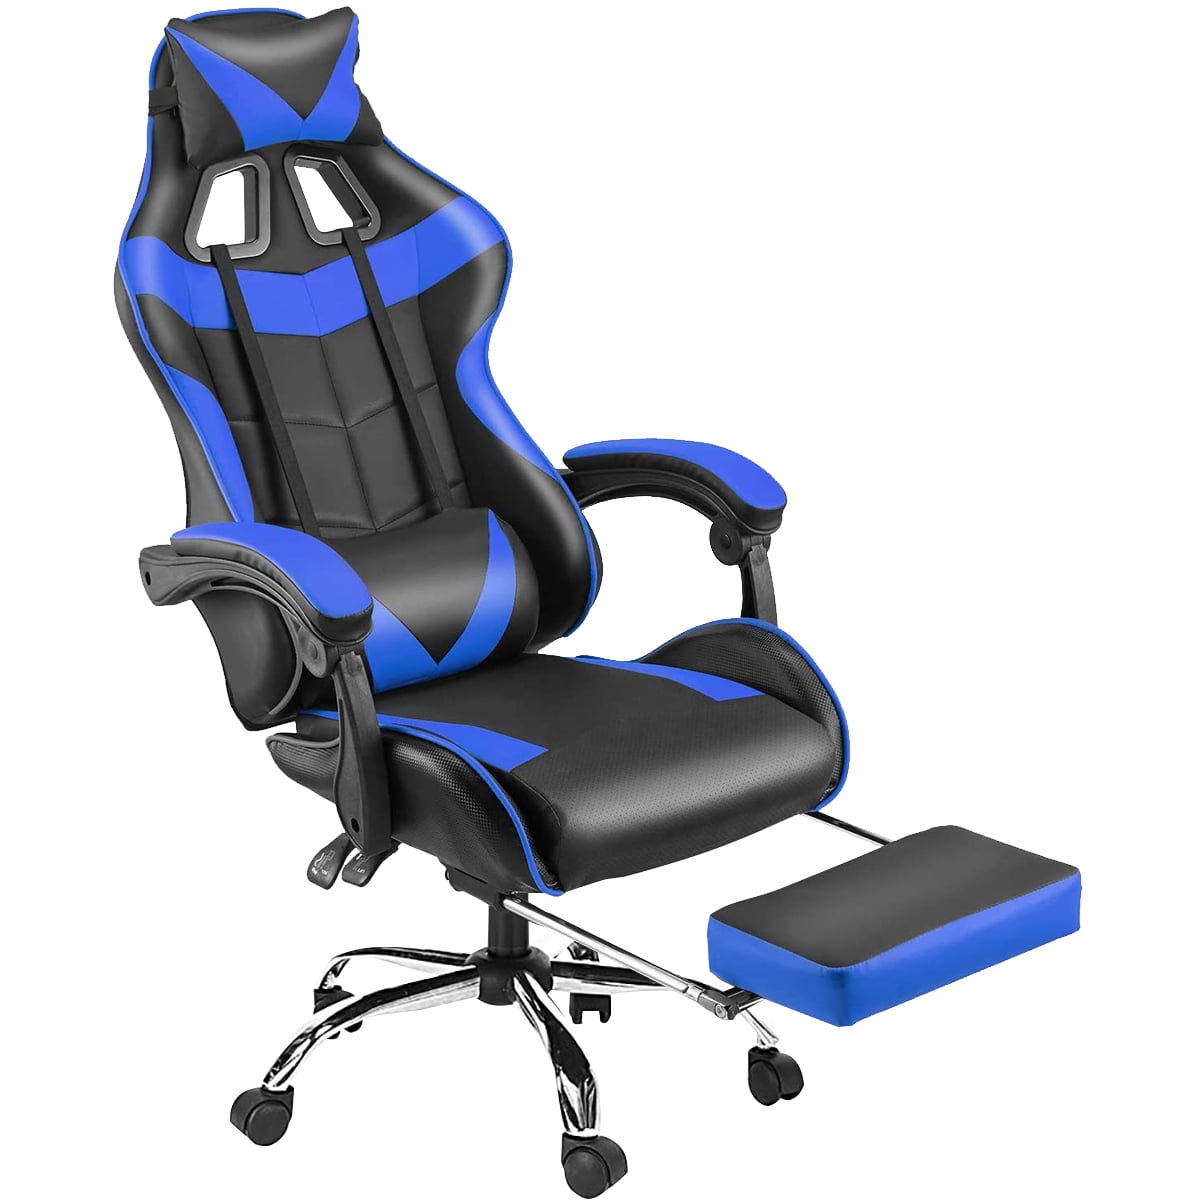 Ergonomic Computer Gaming Chair High Back Office Chair Headrest Lumbar Support 